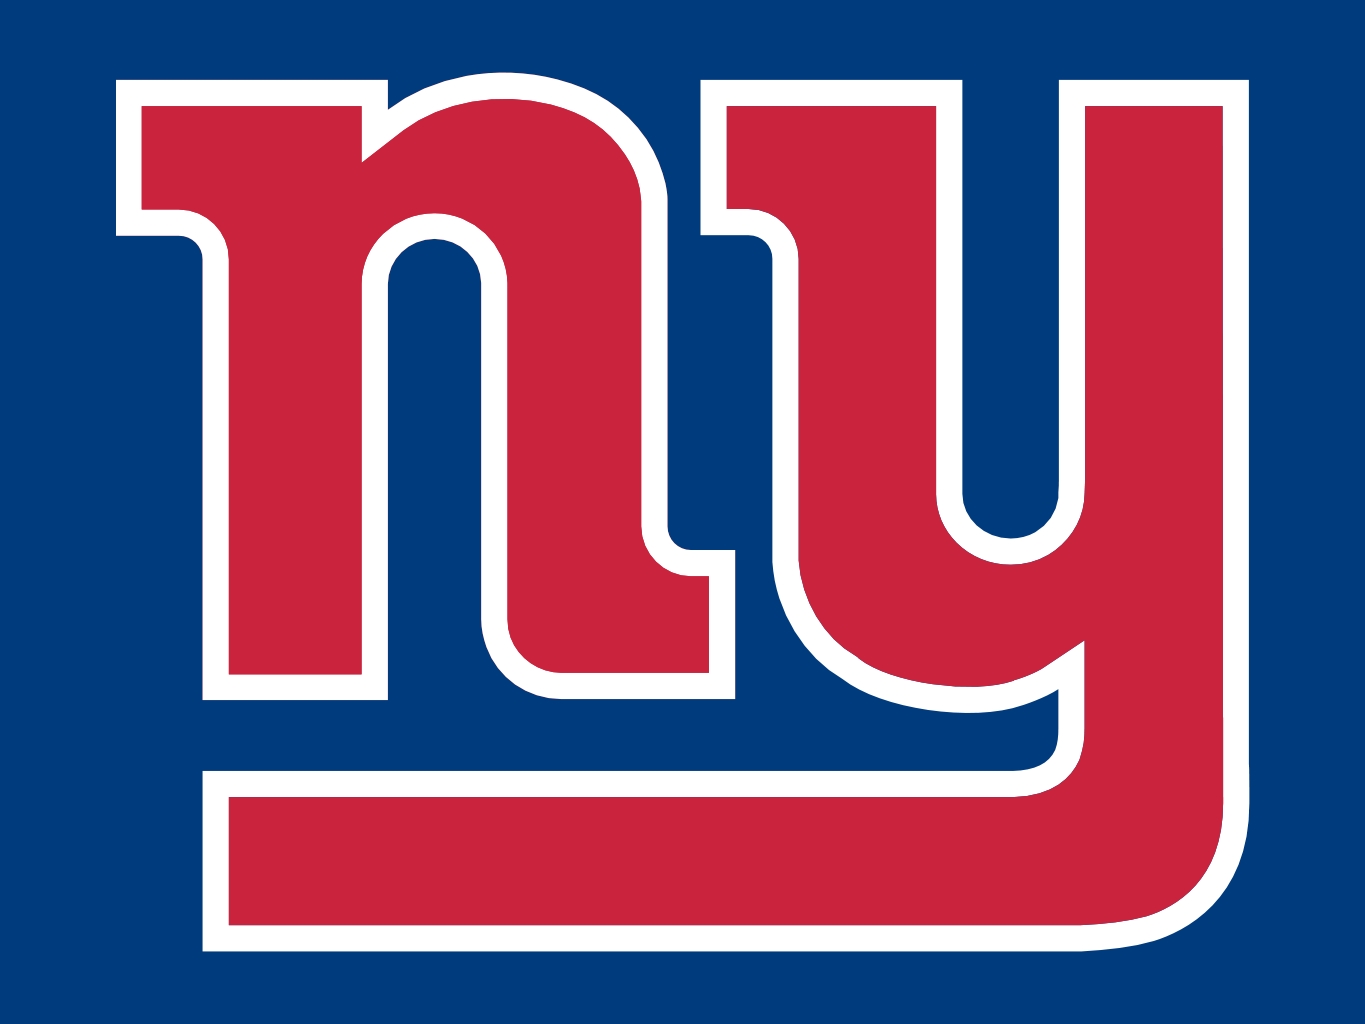 Related New York Giants Team Logo Wallpaper Brett